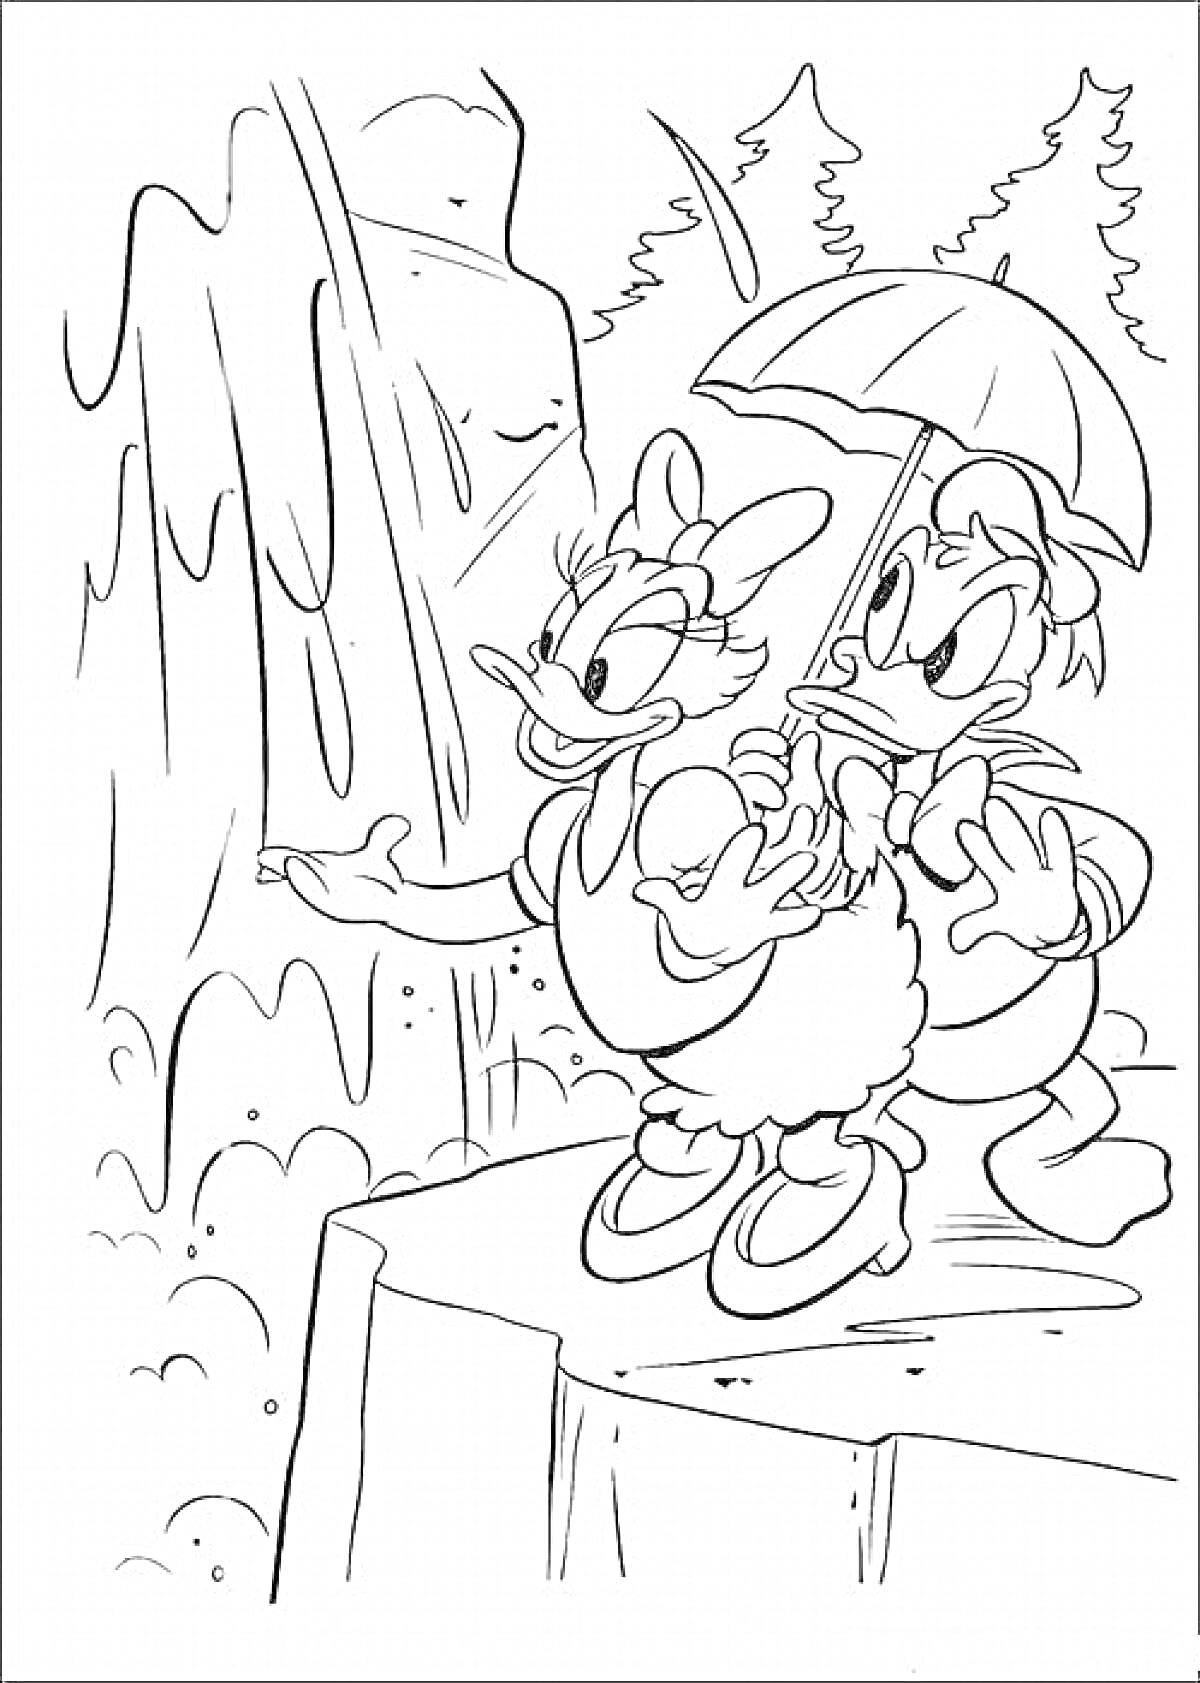 Раскраска Дейзи Дак и другой персонаж с зонтиком на скале перед водопадом, на фоне леса